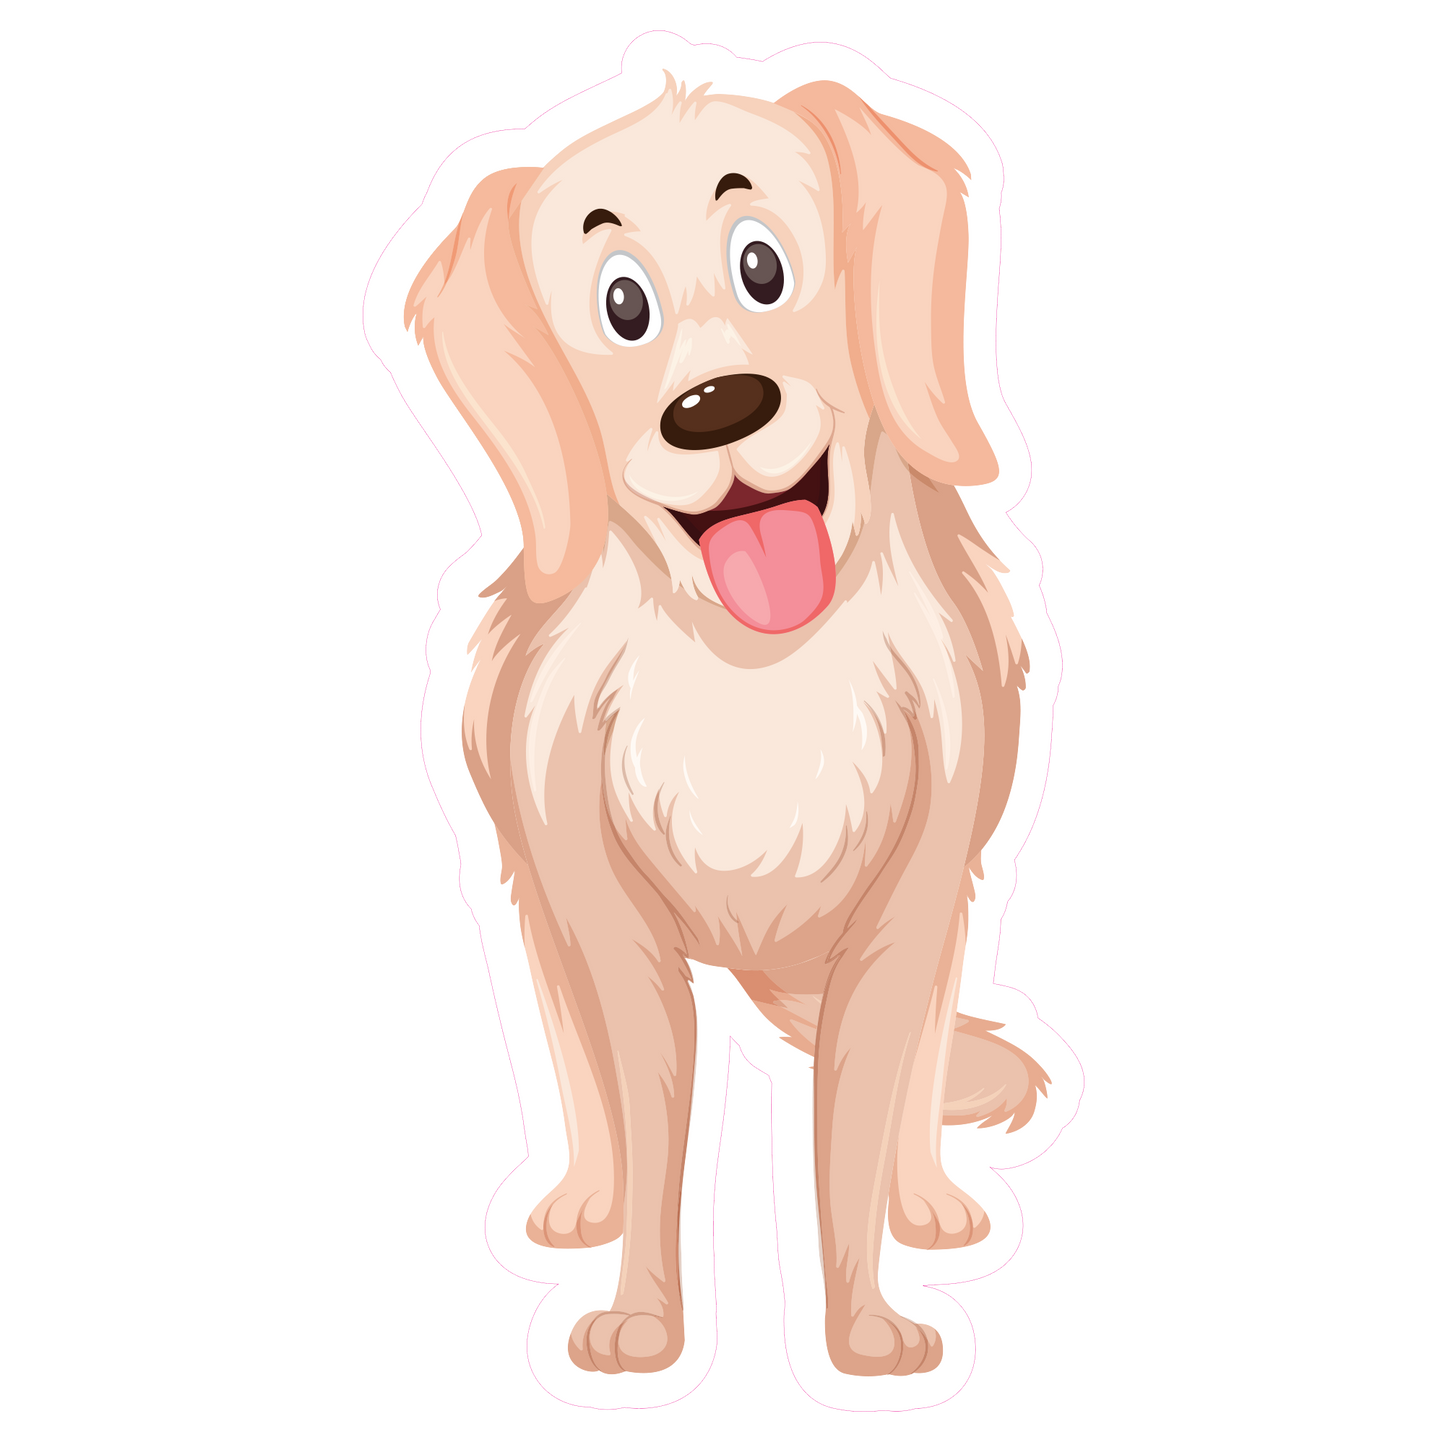 Cute Dog Sticker - Animal Decal